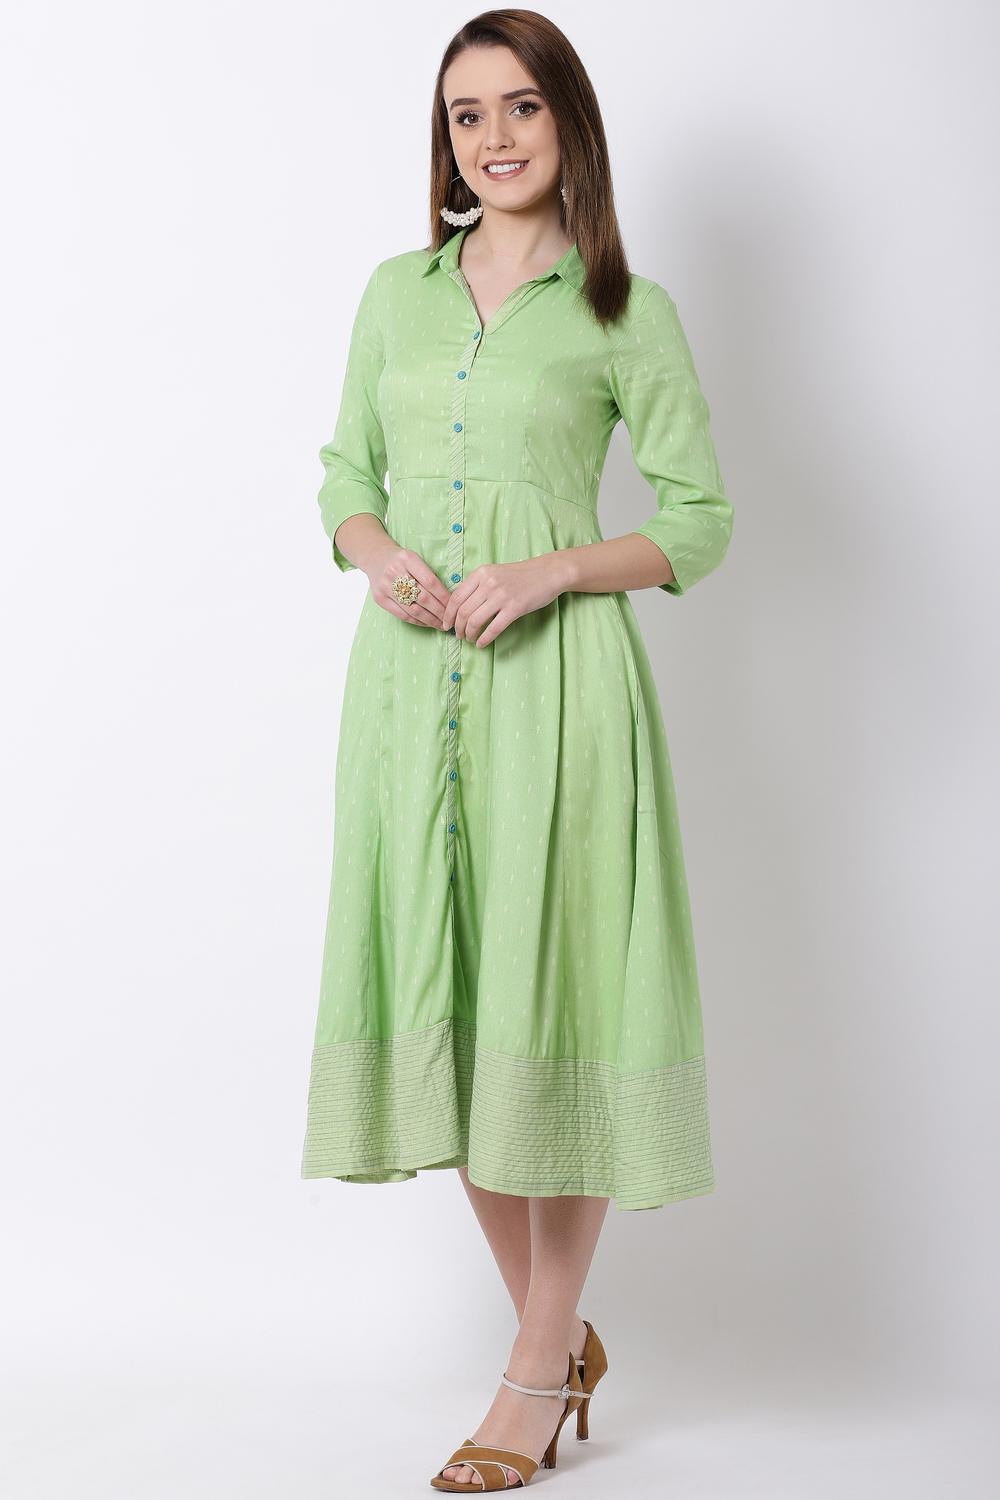 Green Cotton Kalidar Dress